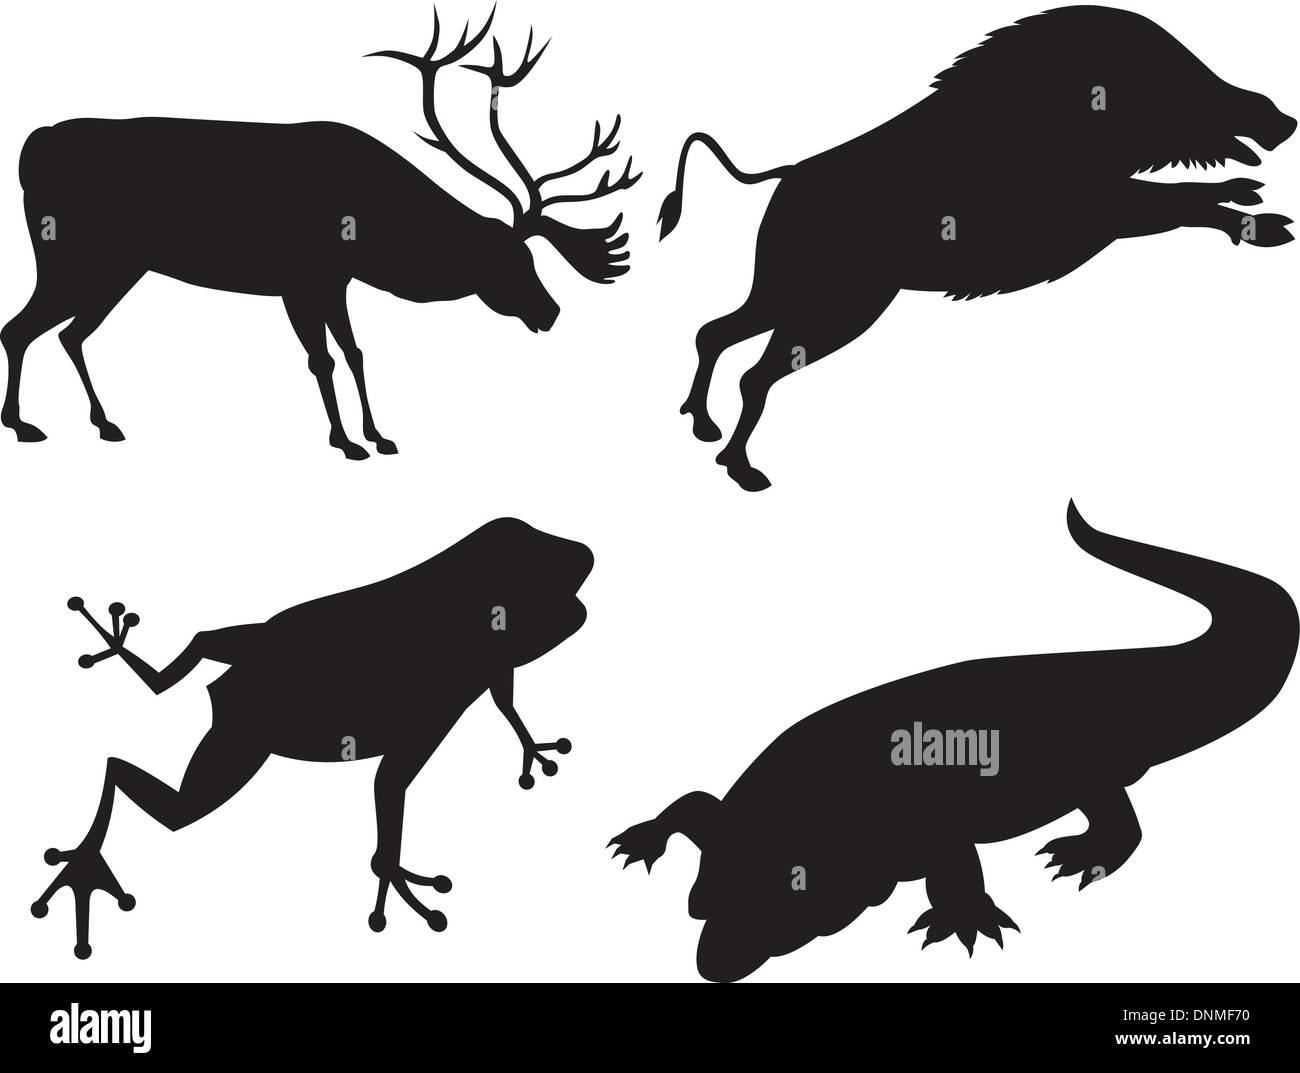 Darstellung der Tierwelt Tiere Silhouetten. Stock Vektor